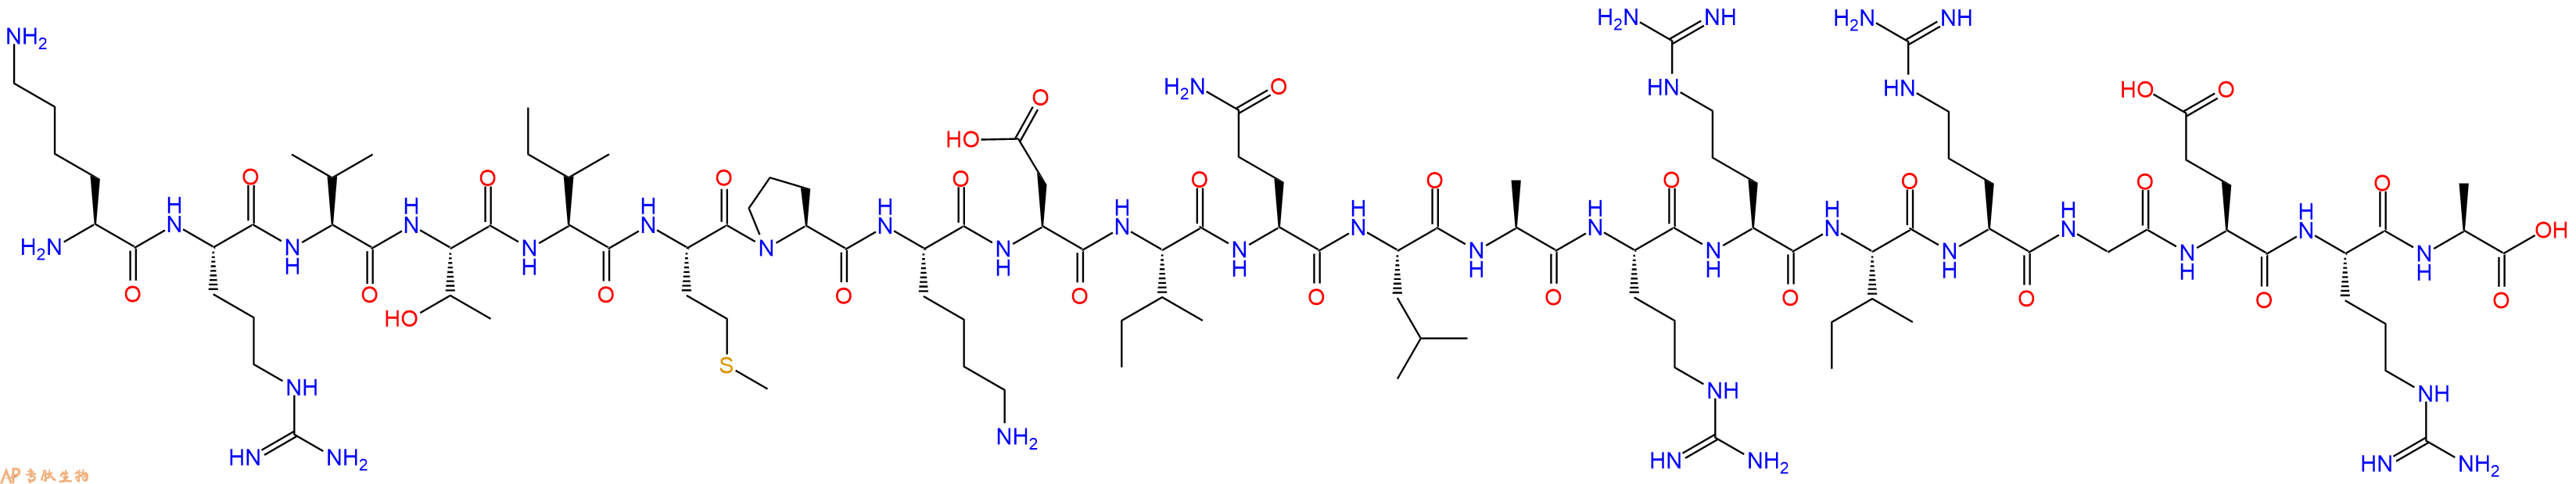 专肽生物产品组蛋白肽段Histone H3 (116-136), C116-136917103-17-4